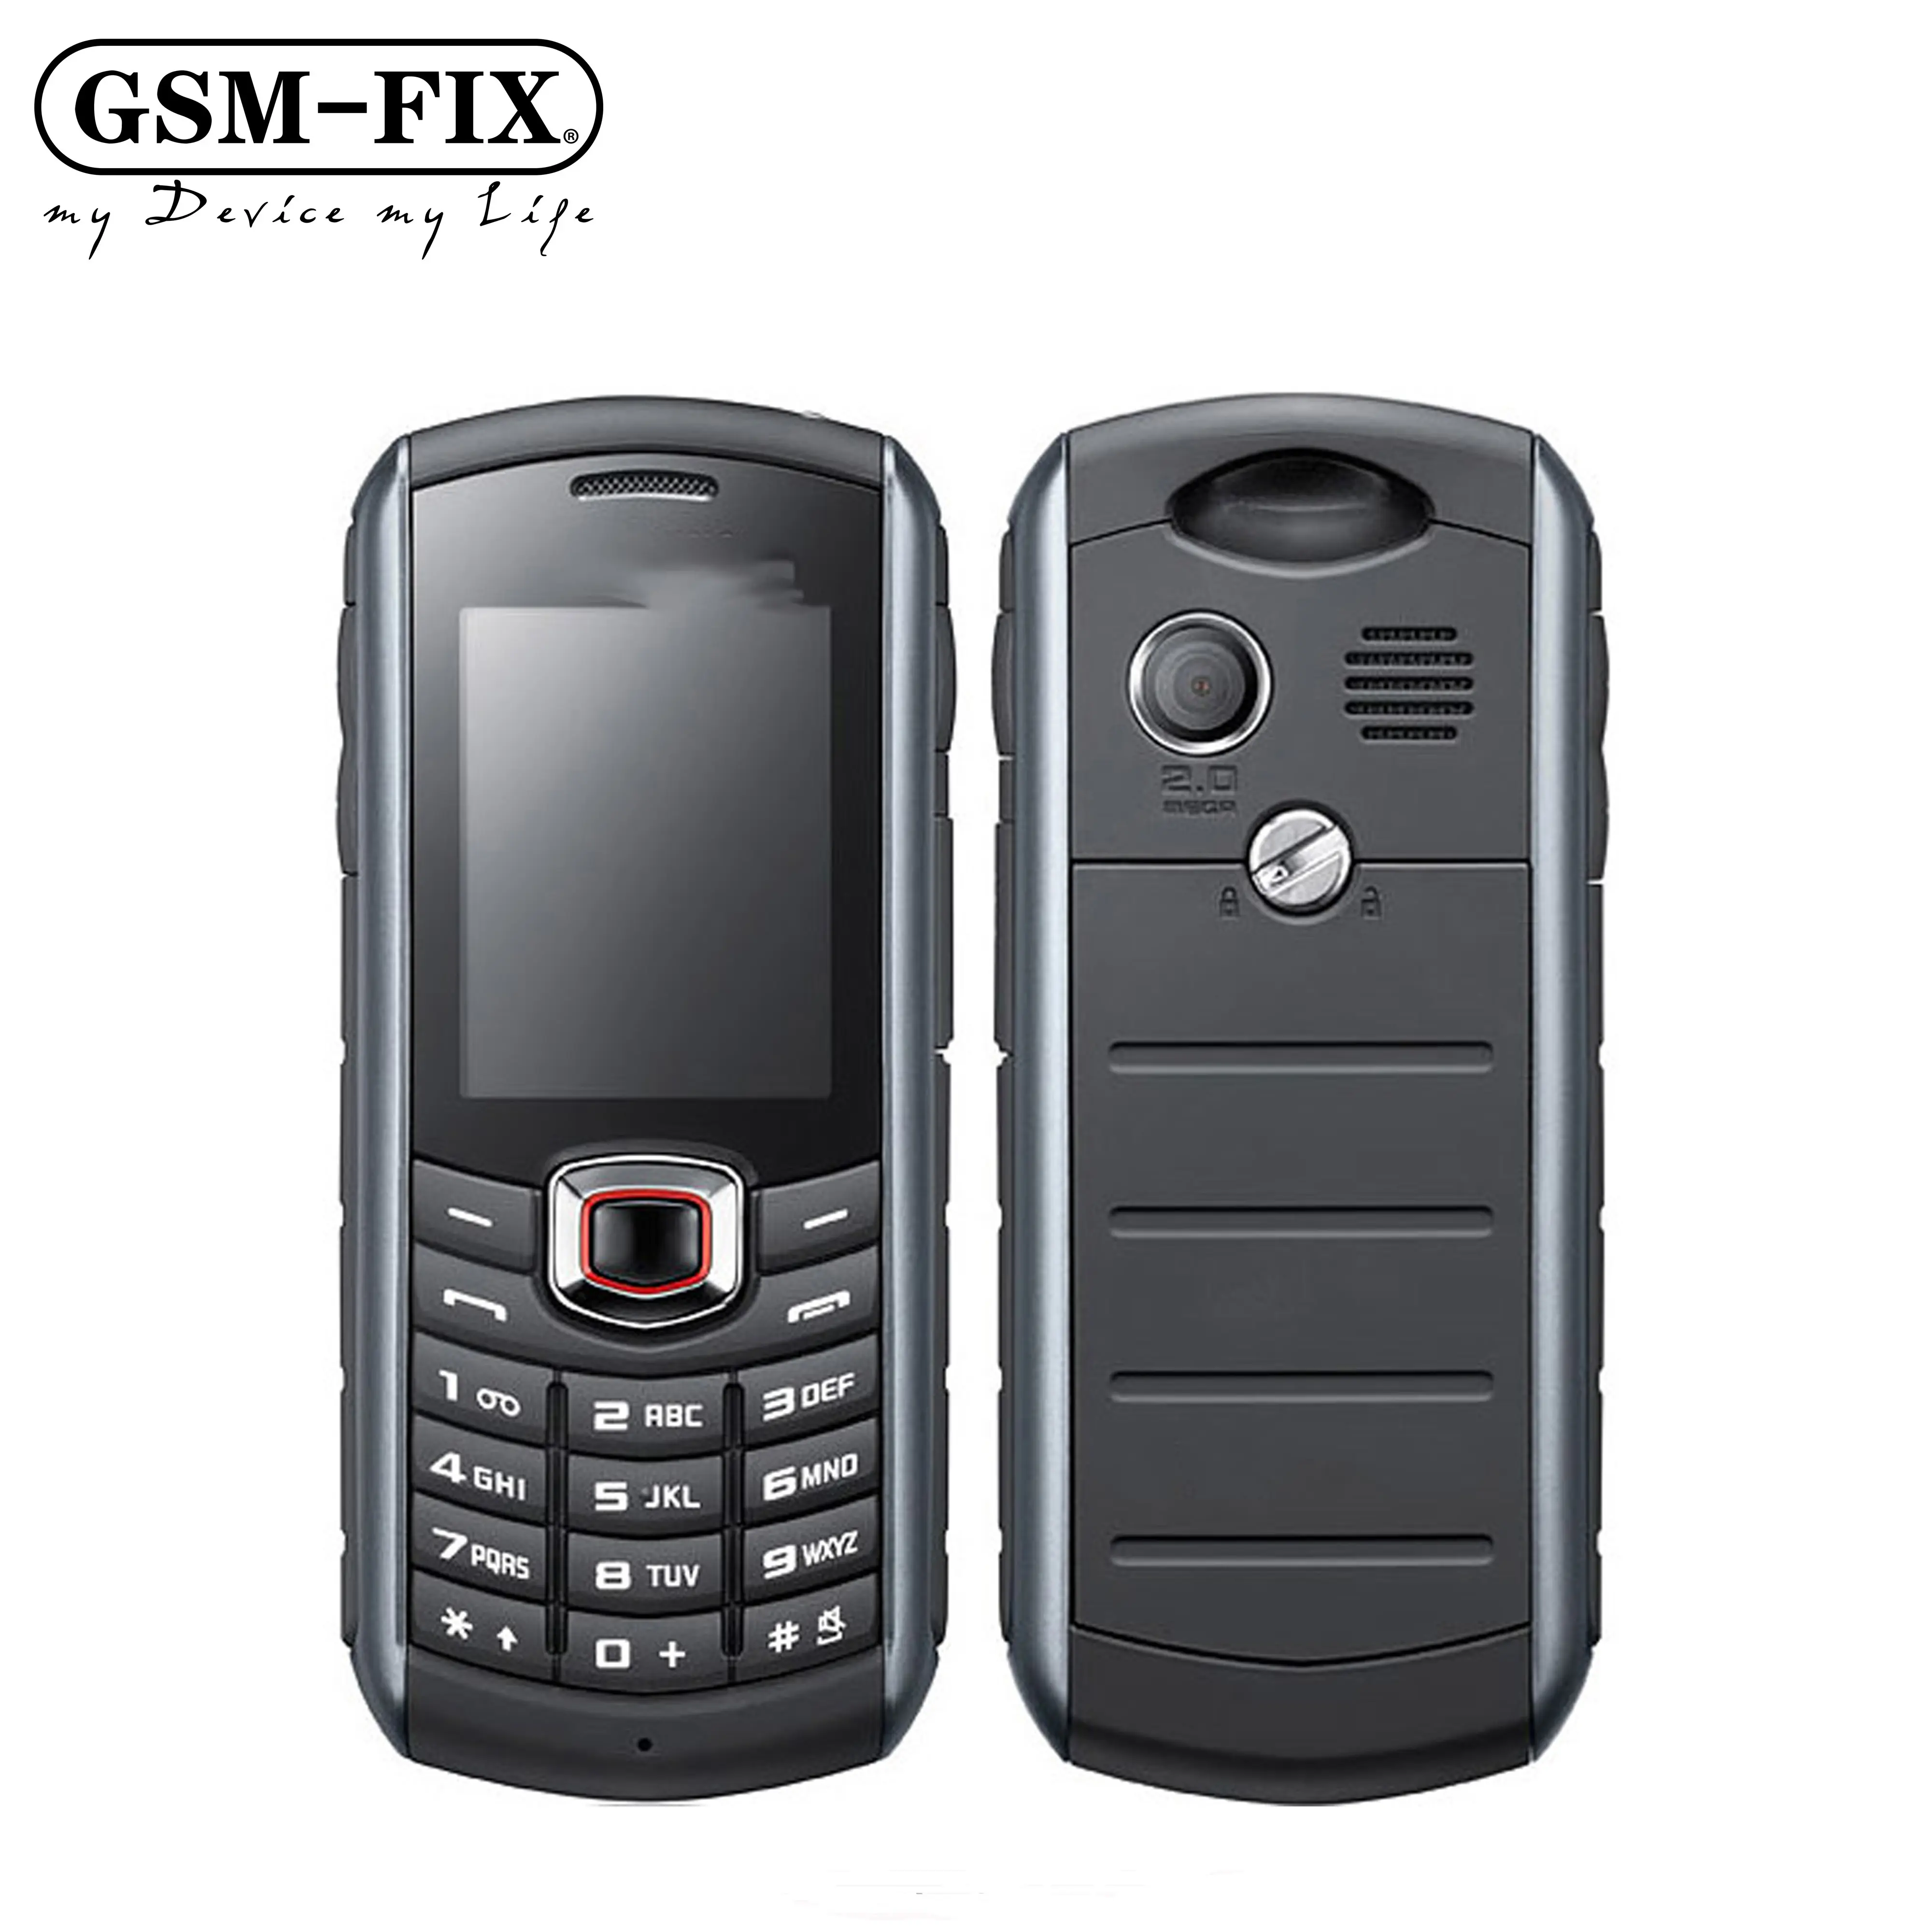 GSM-FIX สำหรับ Samsung xcover 271ต้นฉบับปลดล็อคสำหรับ Samsung B2710 1300mAh 2MP GPS 2.0นิ้ว3G โทรศัพท์มือถือกันน้ำ